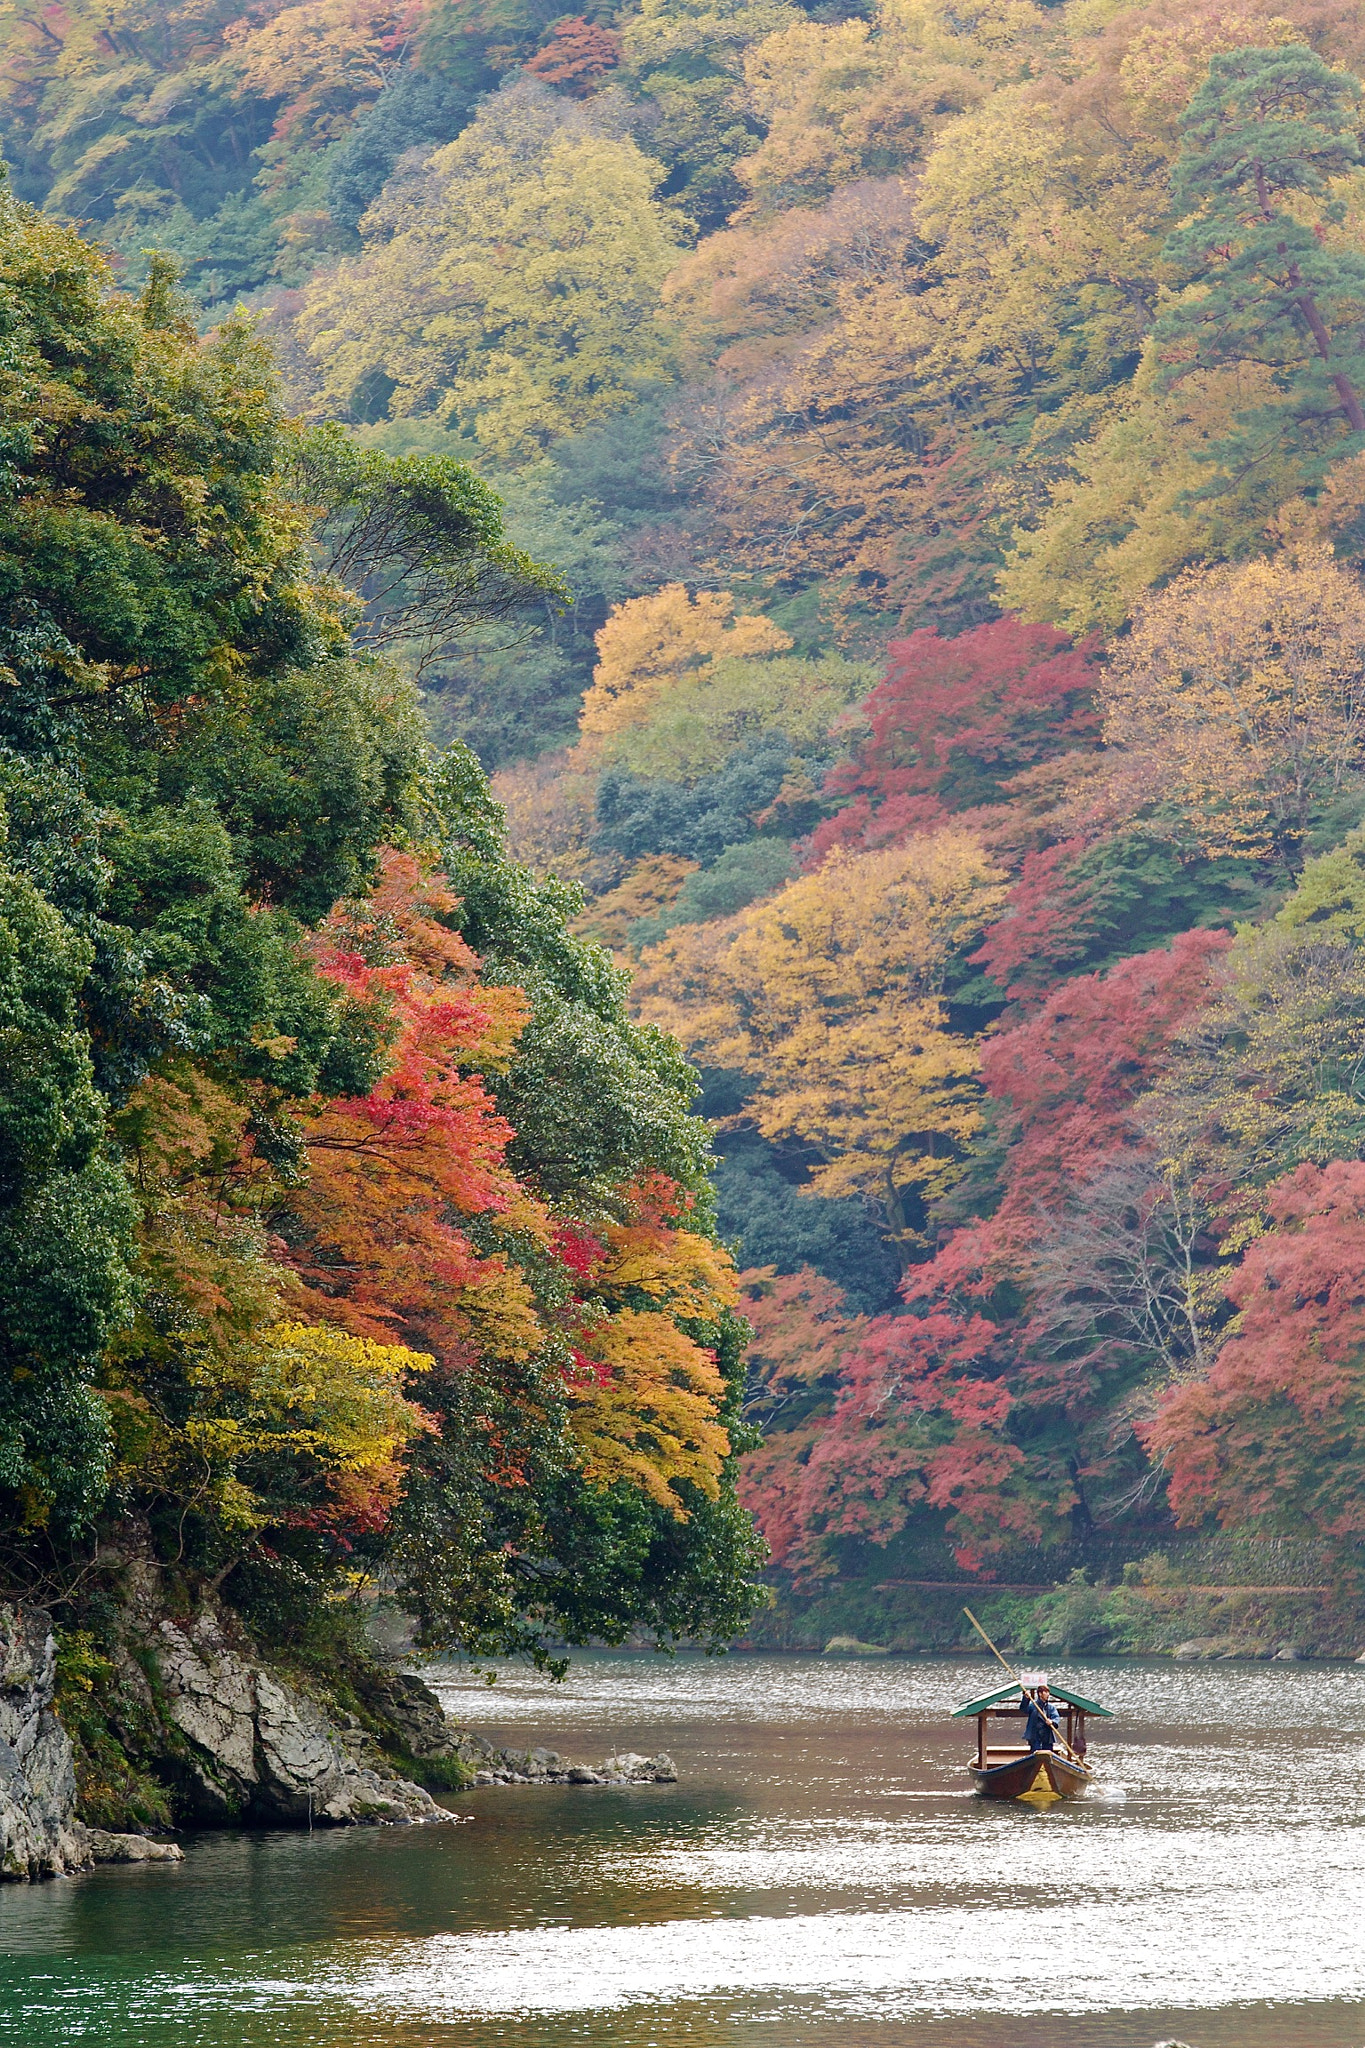 Sony SLT-A77 sample photo. Through the autumn photography